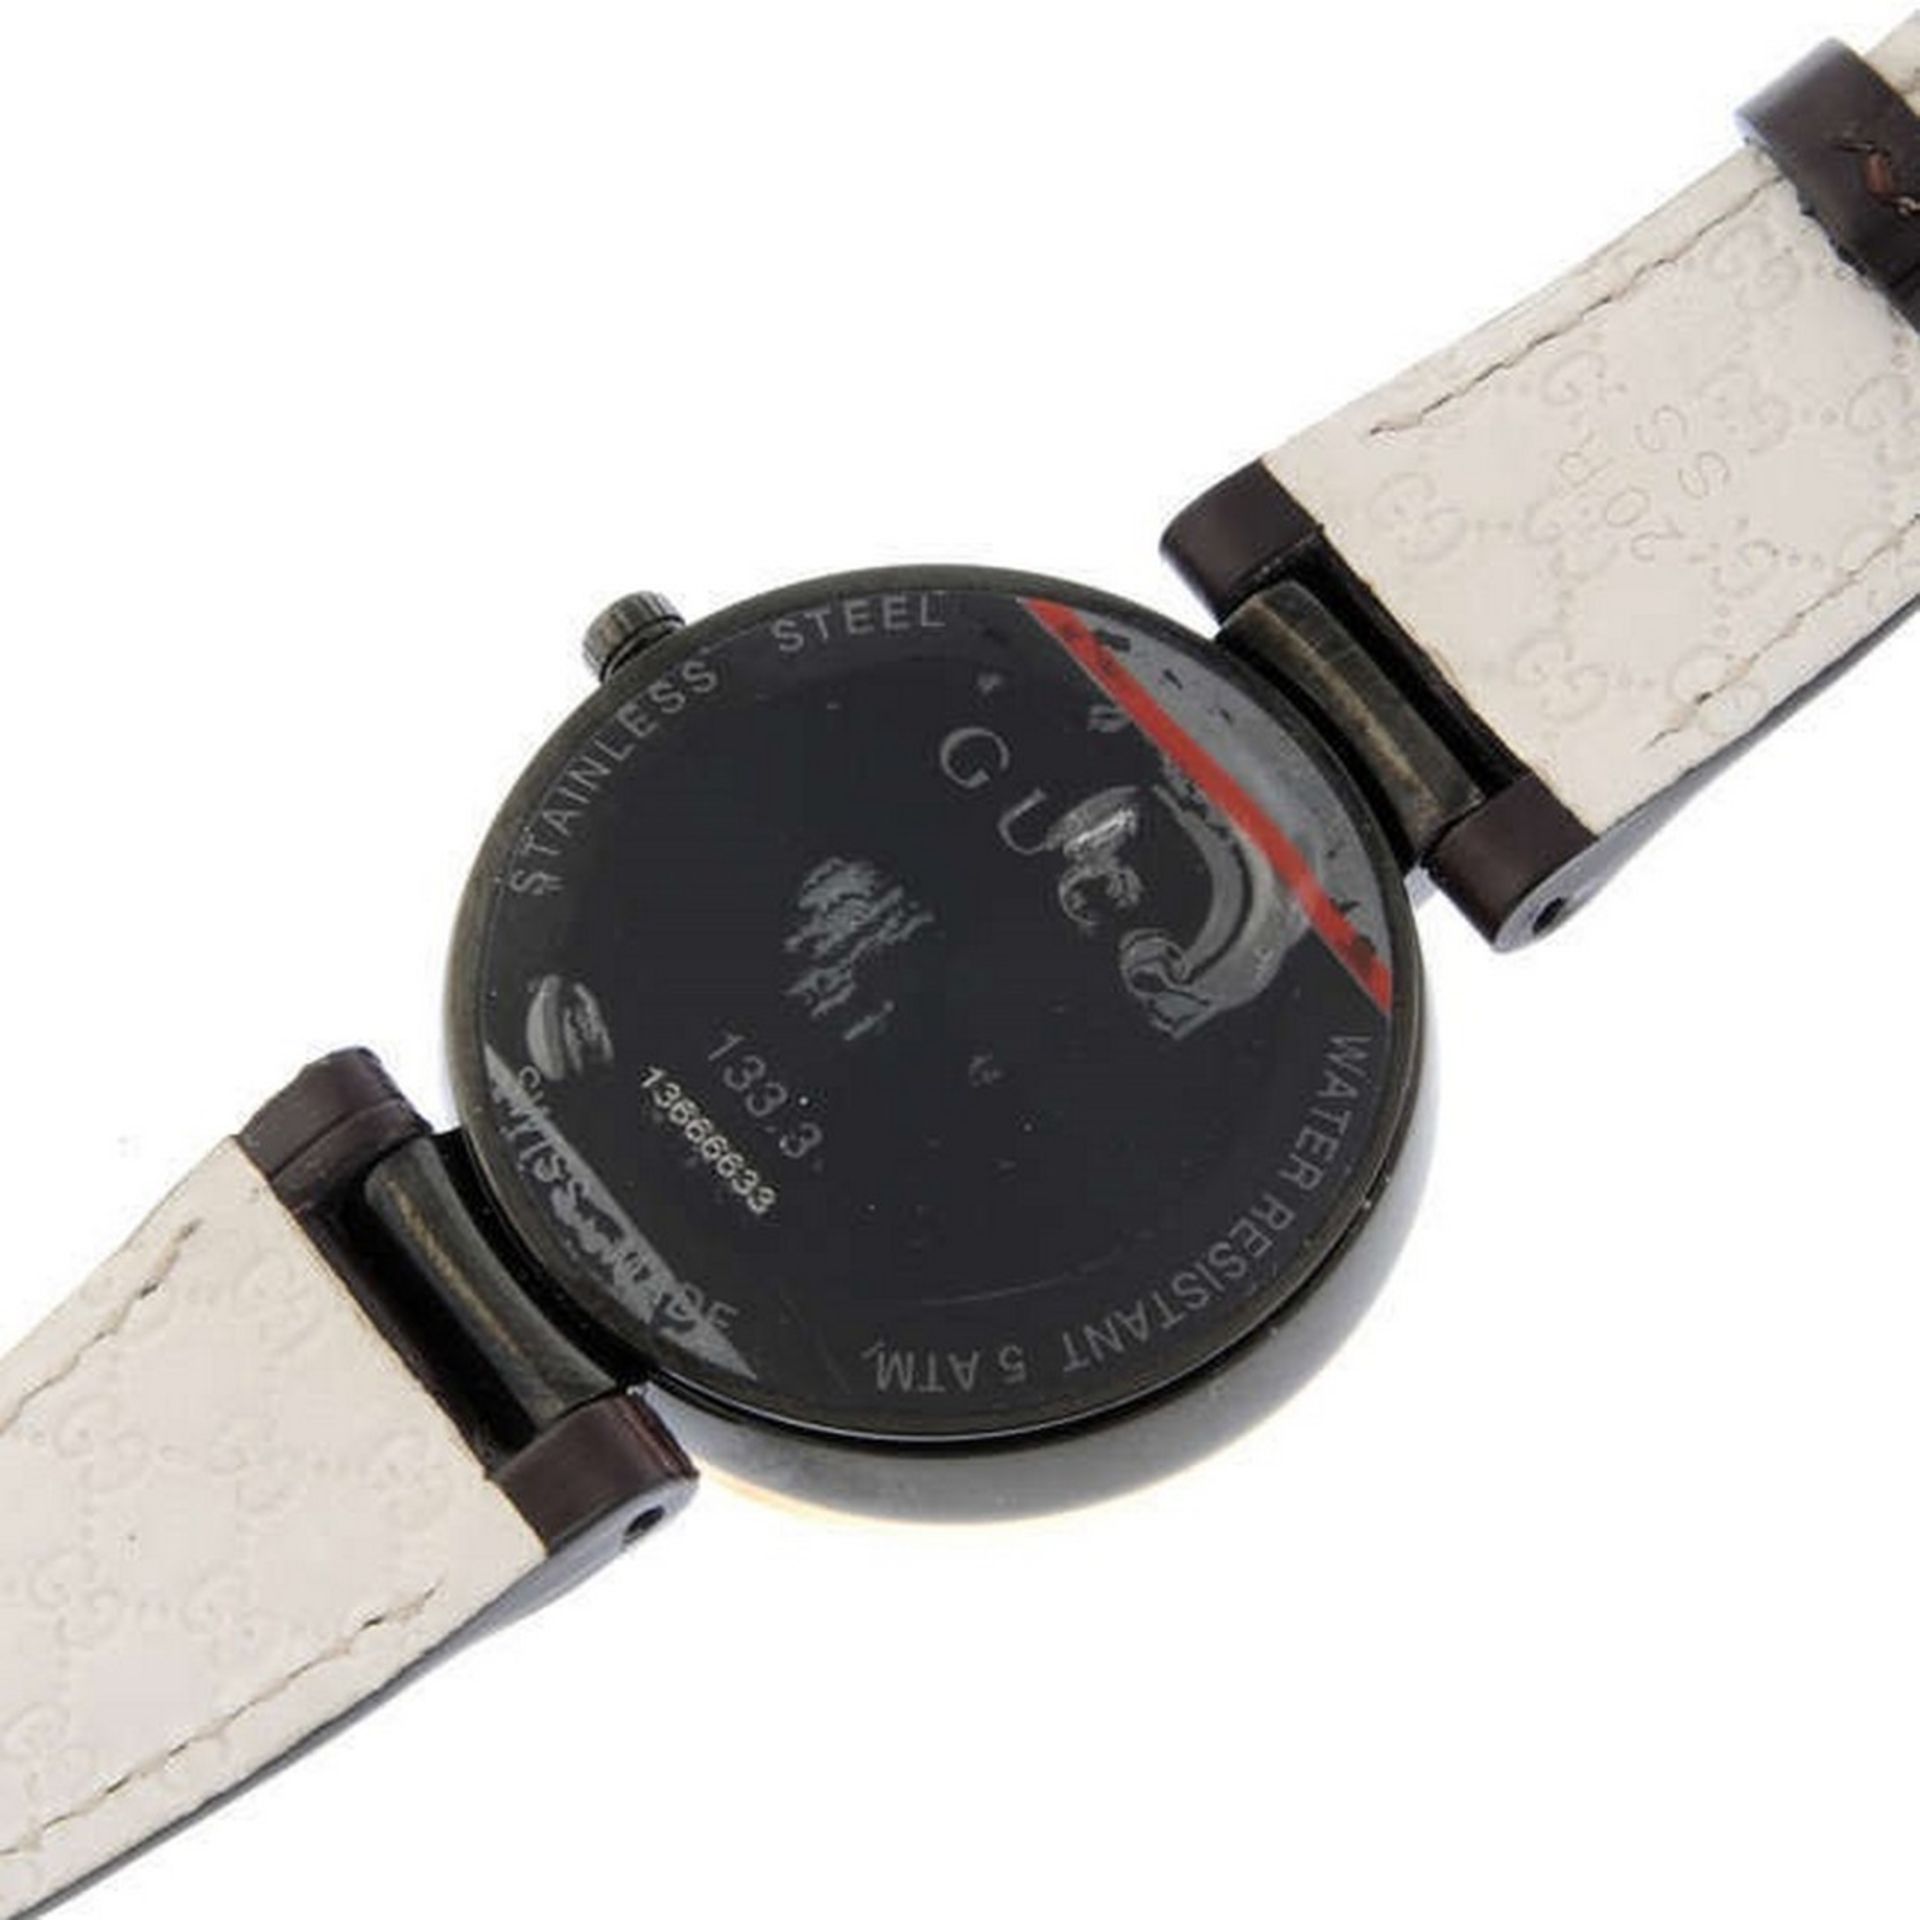 Gucci / 133.3 - Gentlmen's Steel Wrist Watch - Image 4 of 4